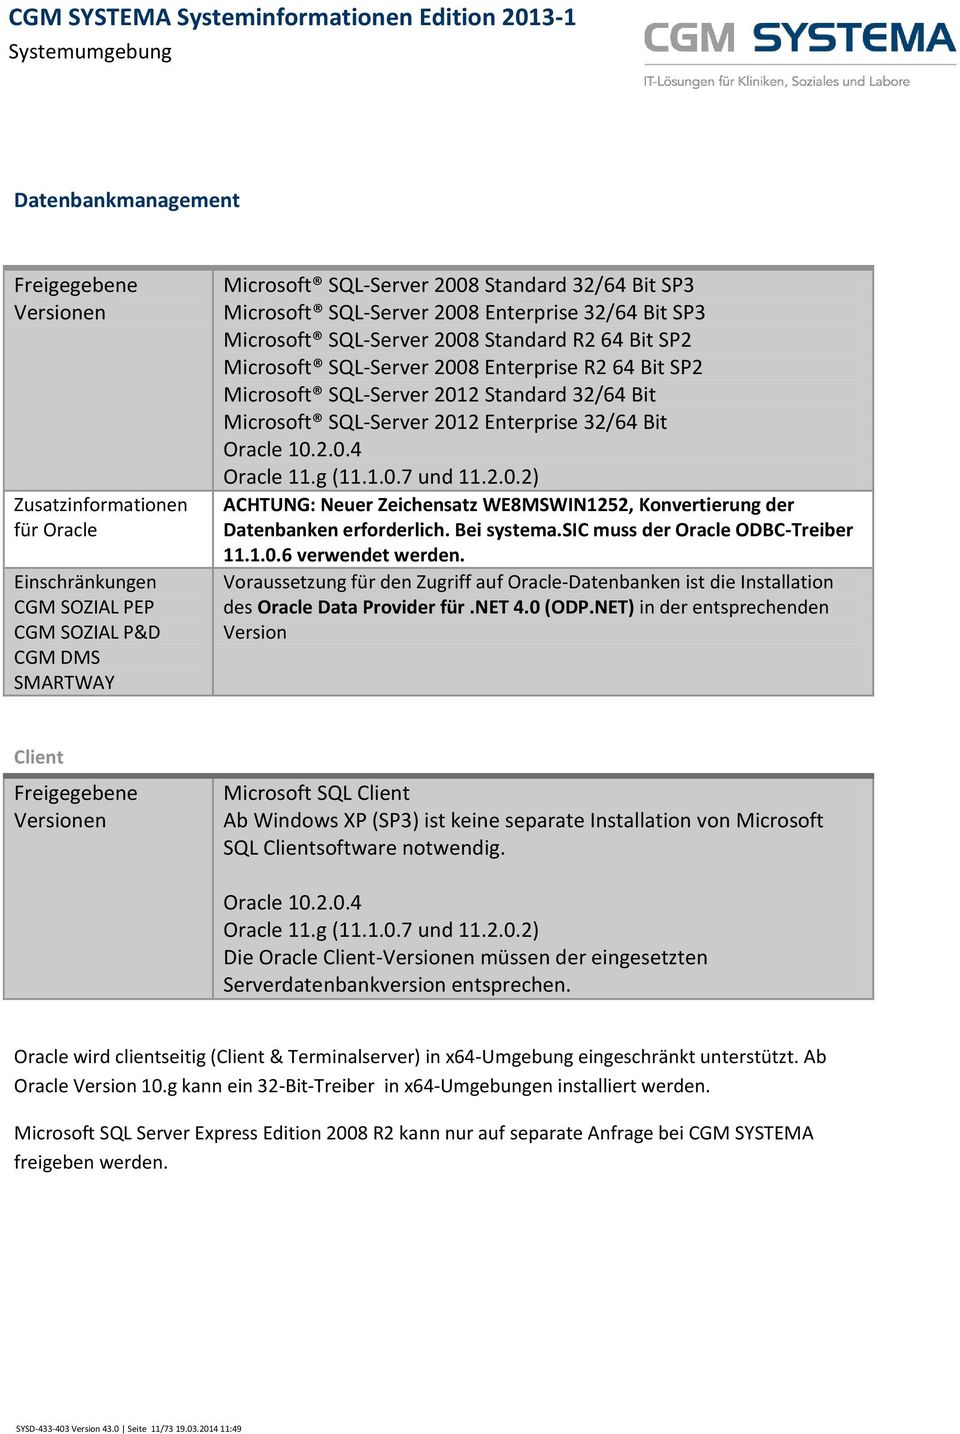 Microsoft SQL-Server 2012 Enterprise 32/64 Bit Oracle 10.2.0.4 Oracle 11.g (11.1.0.7 und 11.2.0.2) ACHTUNG: Neuer Zeichensatz WE8MSWIN1252, Konvertierung der Datenbanken erforderlich. Bei systema.